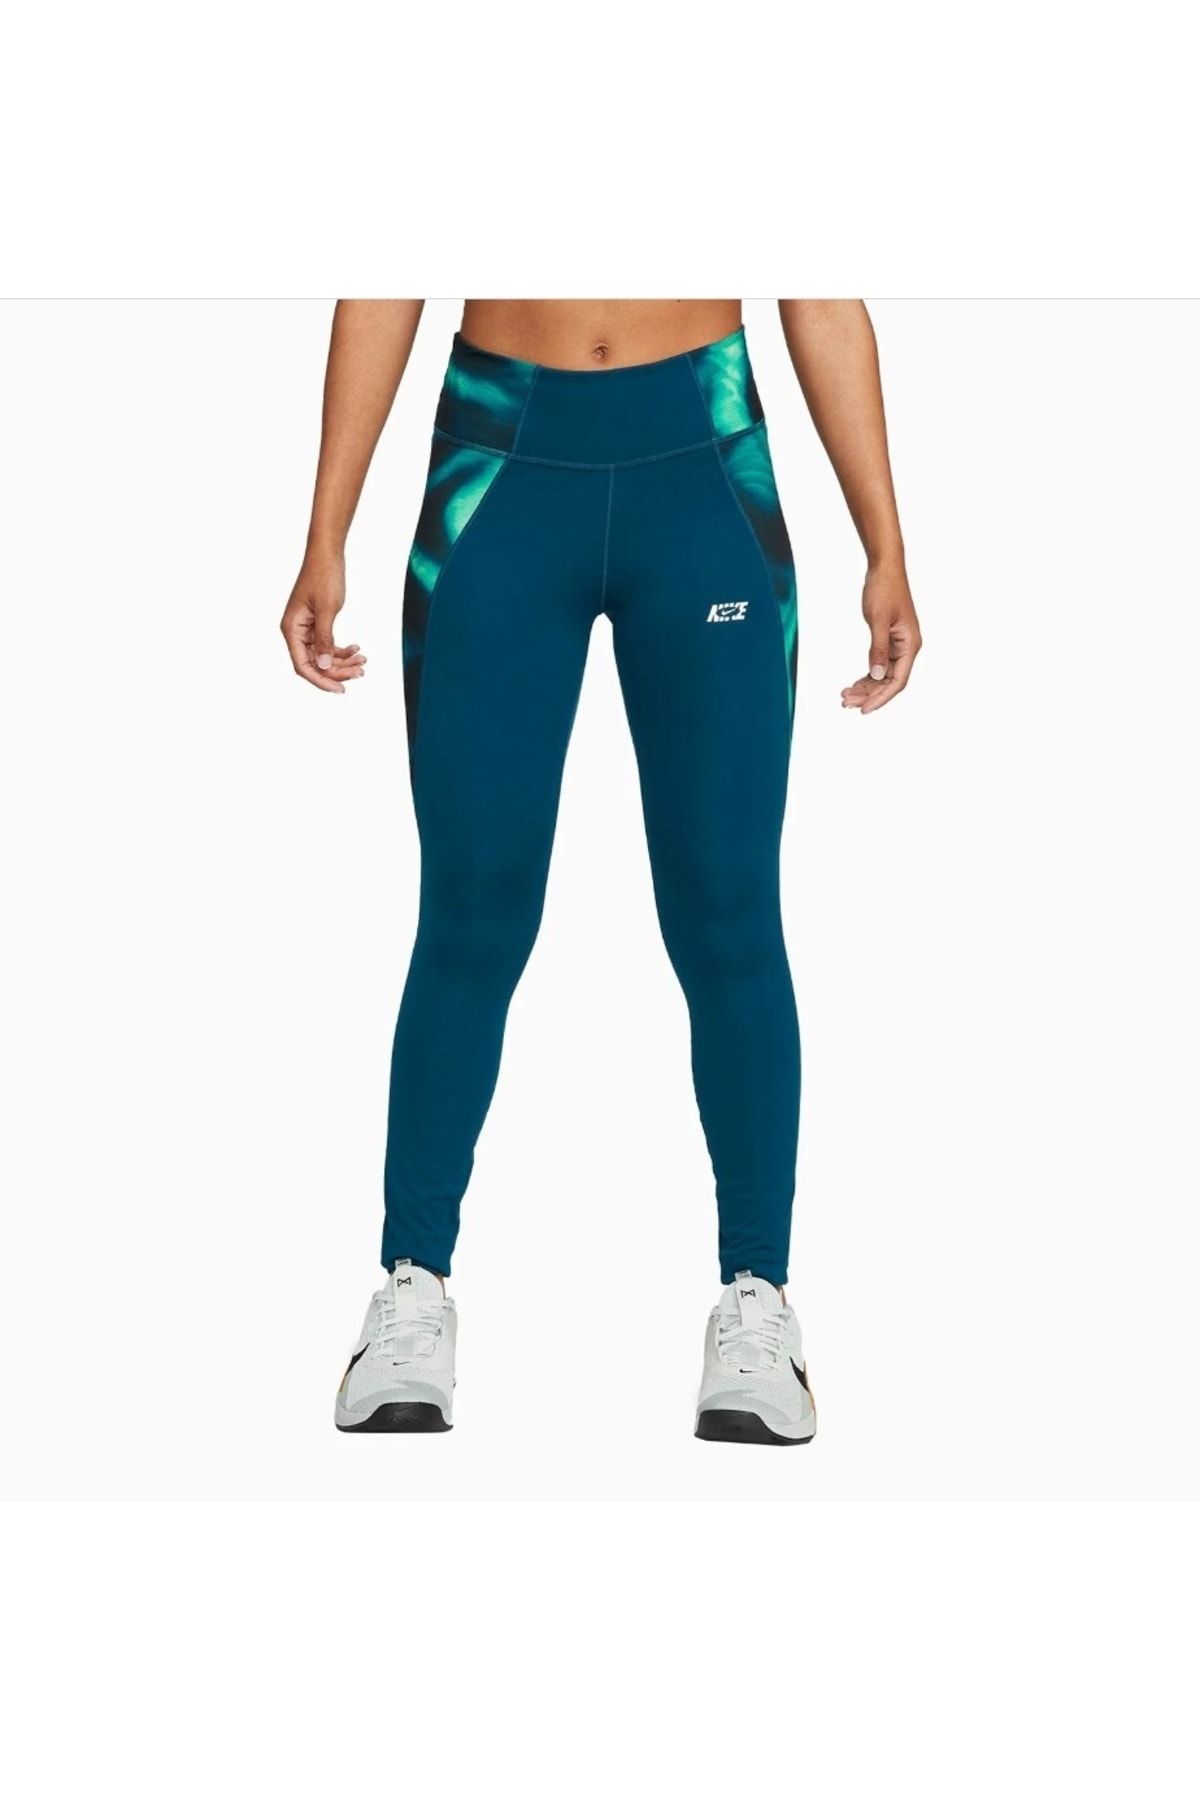 Nike Dri-Fit One Green Women's 7/8 Tights